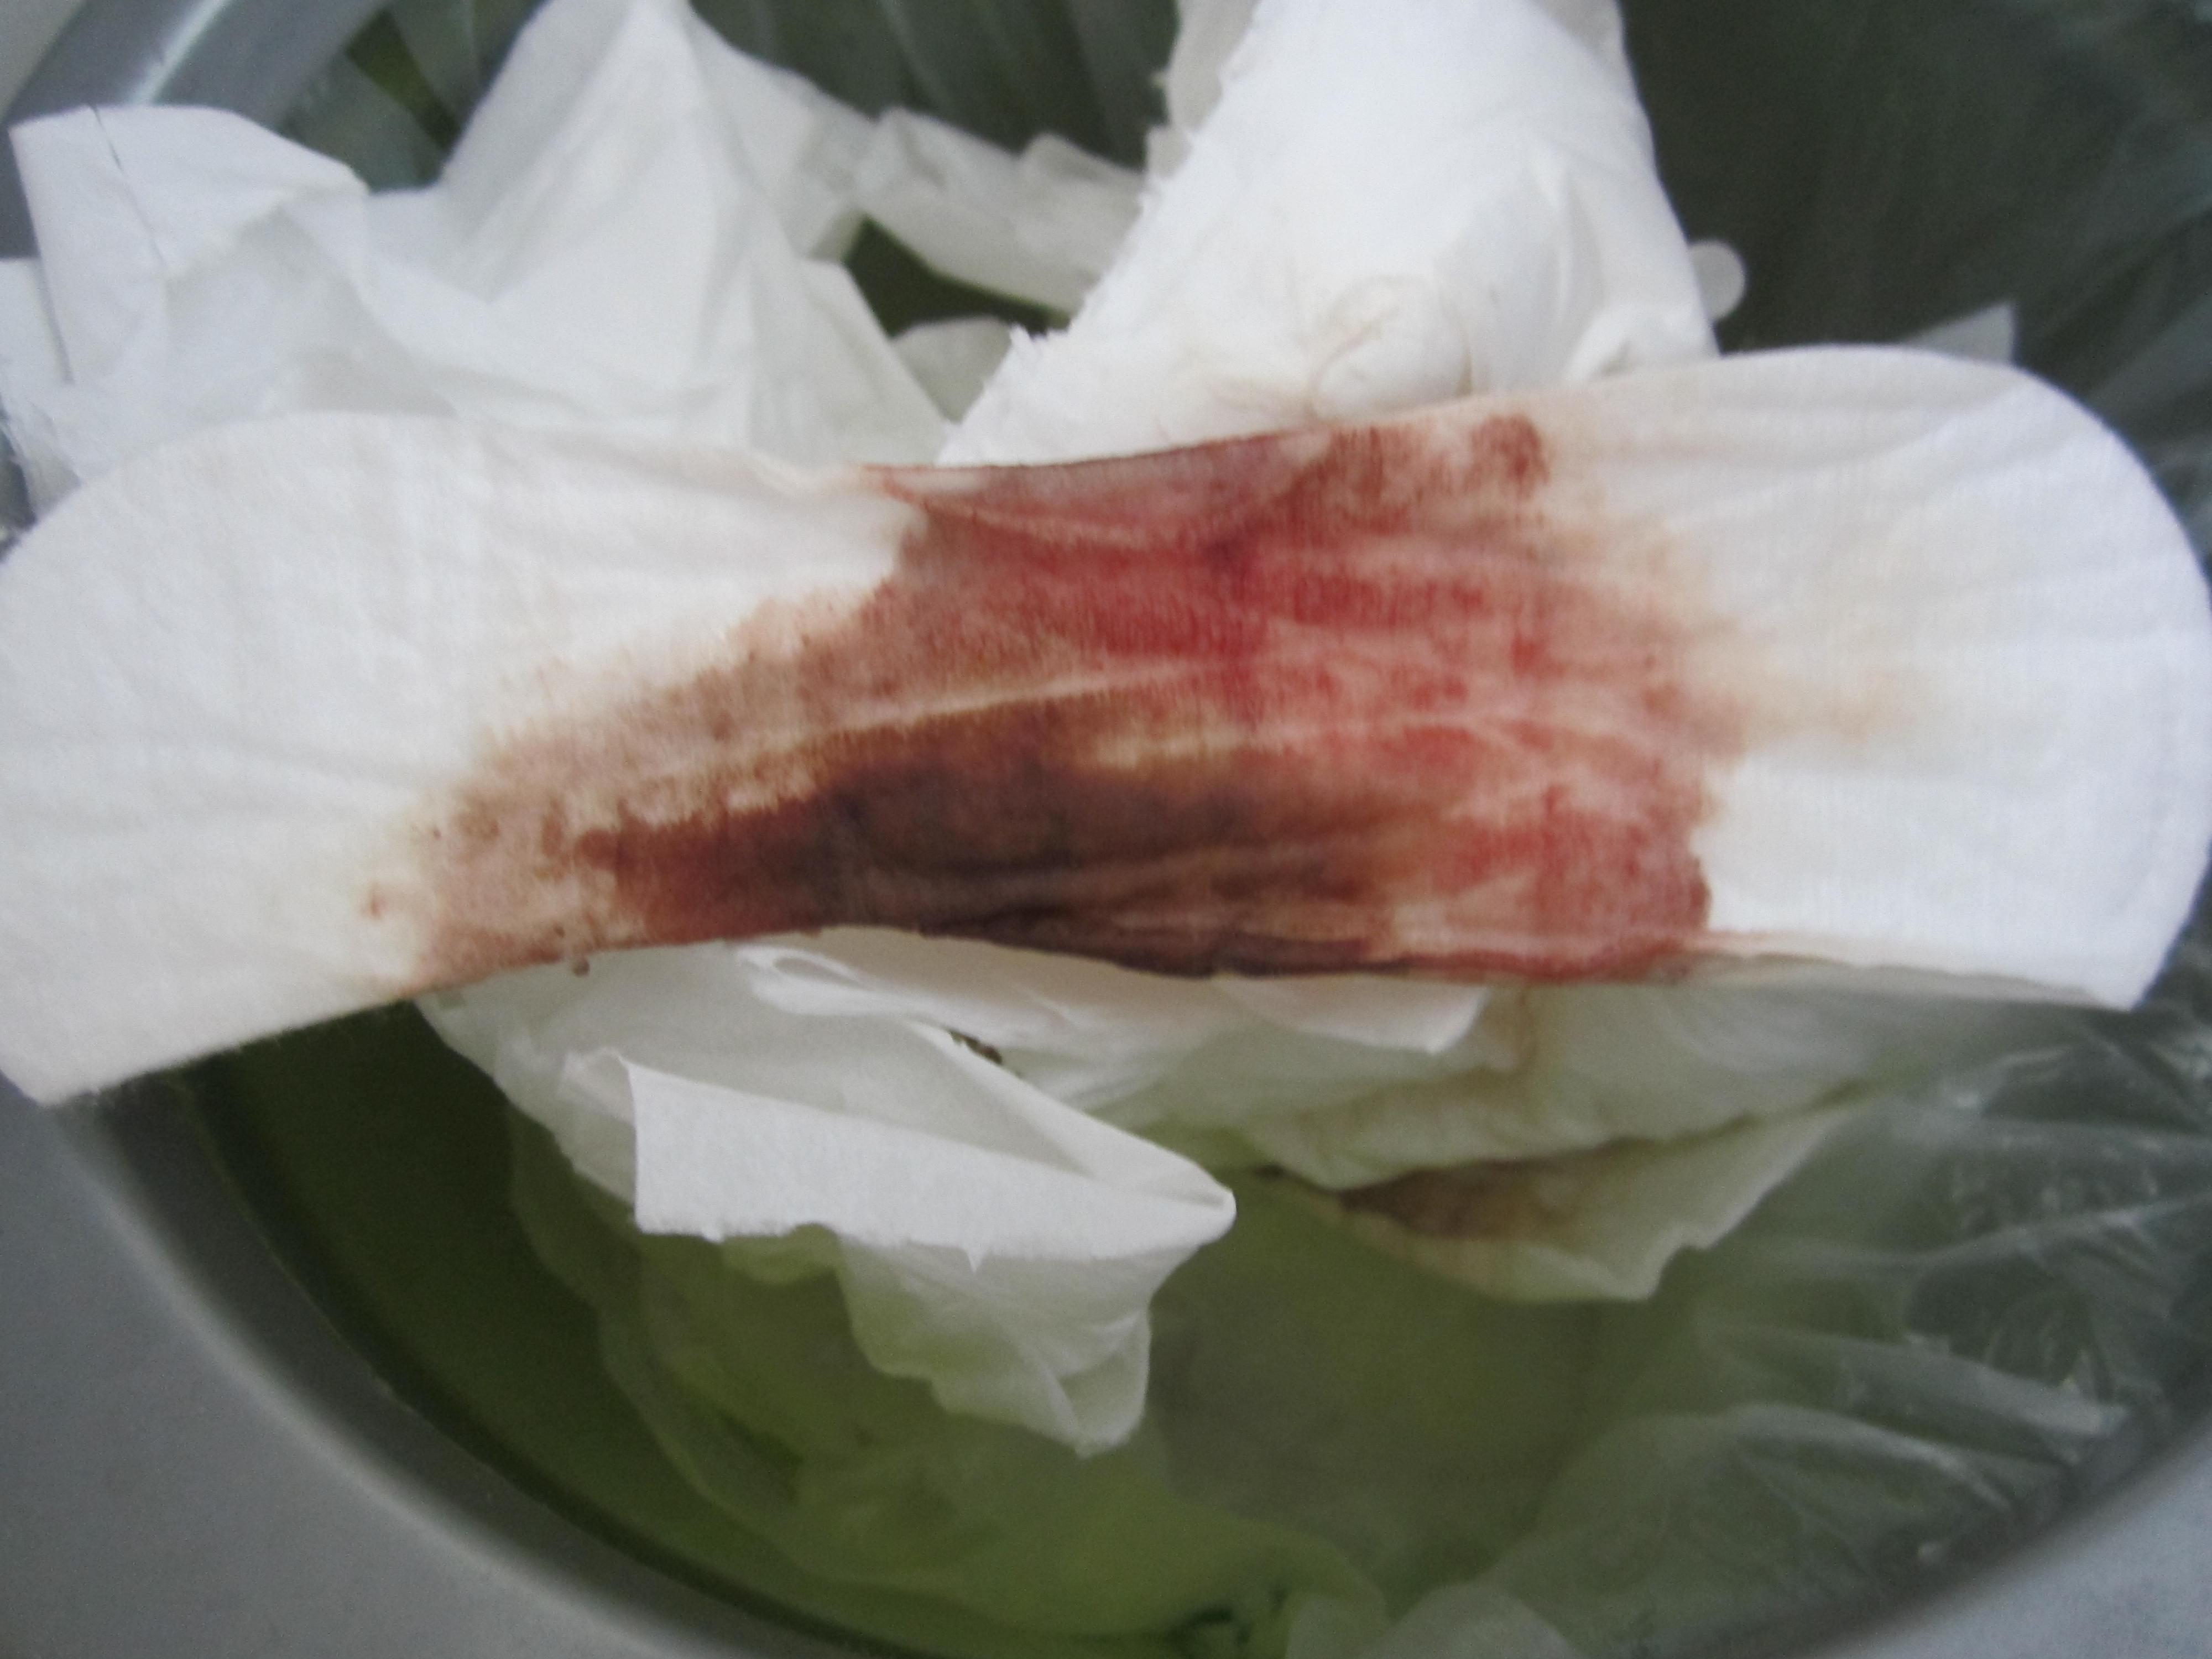 刚刚我发现卫生巾上有血看起来像月经有图片麻烦医生帮我看